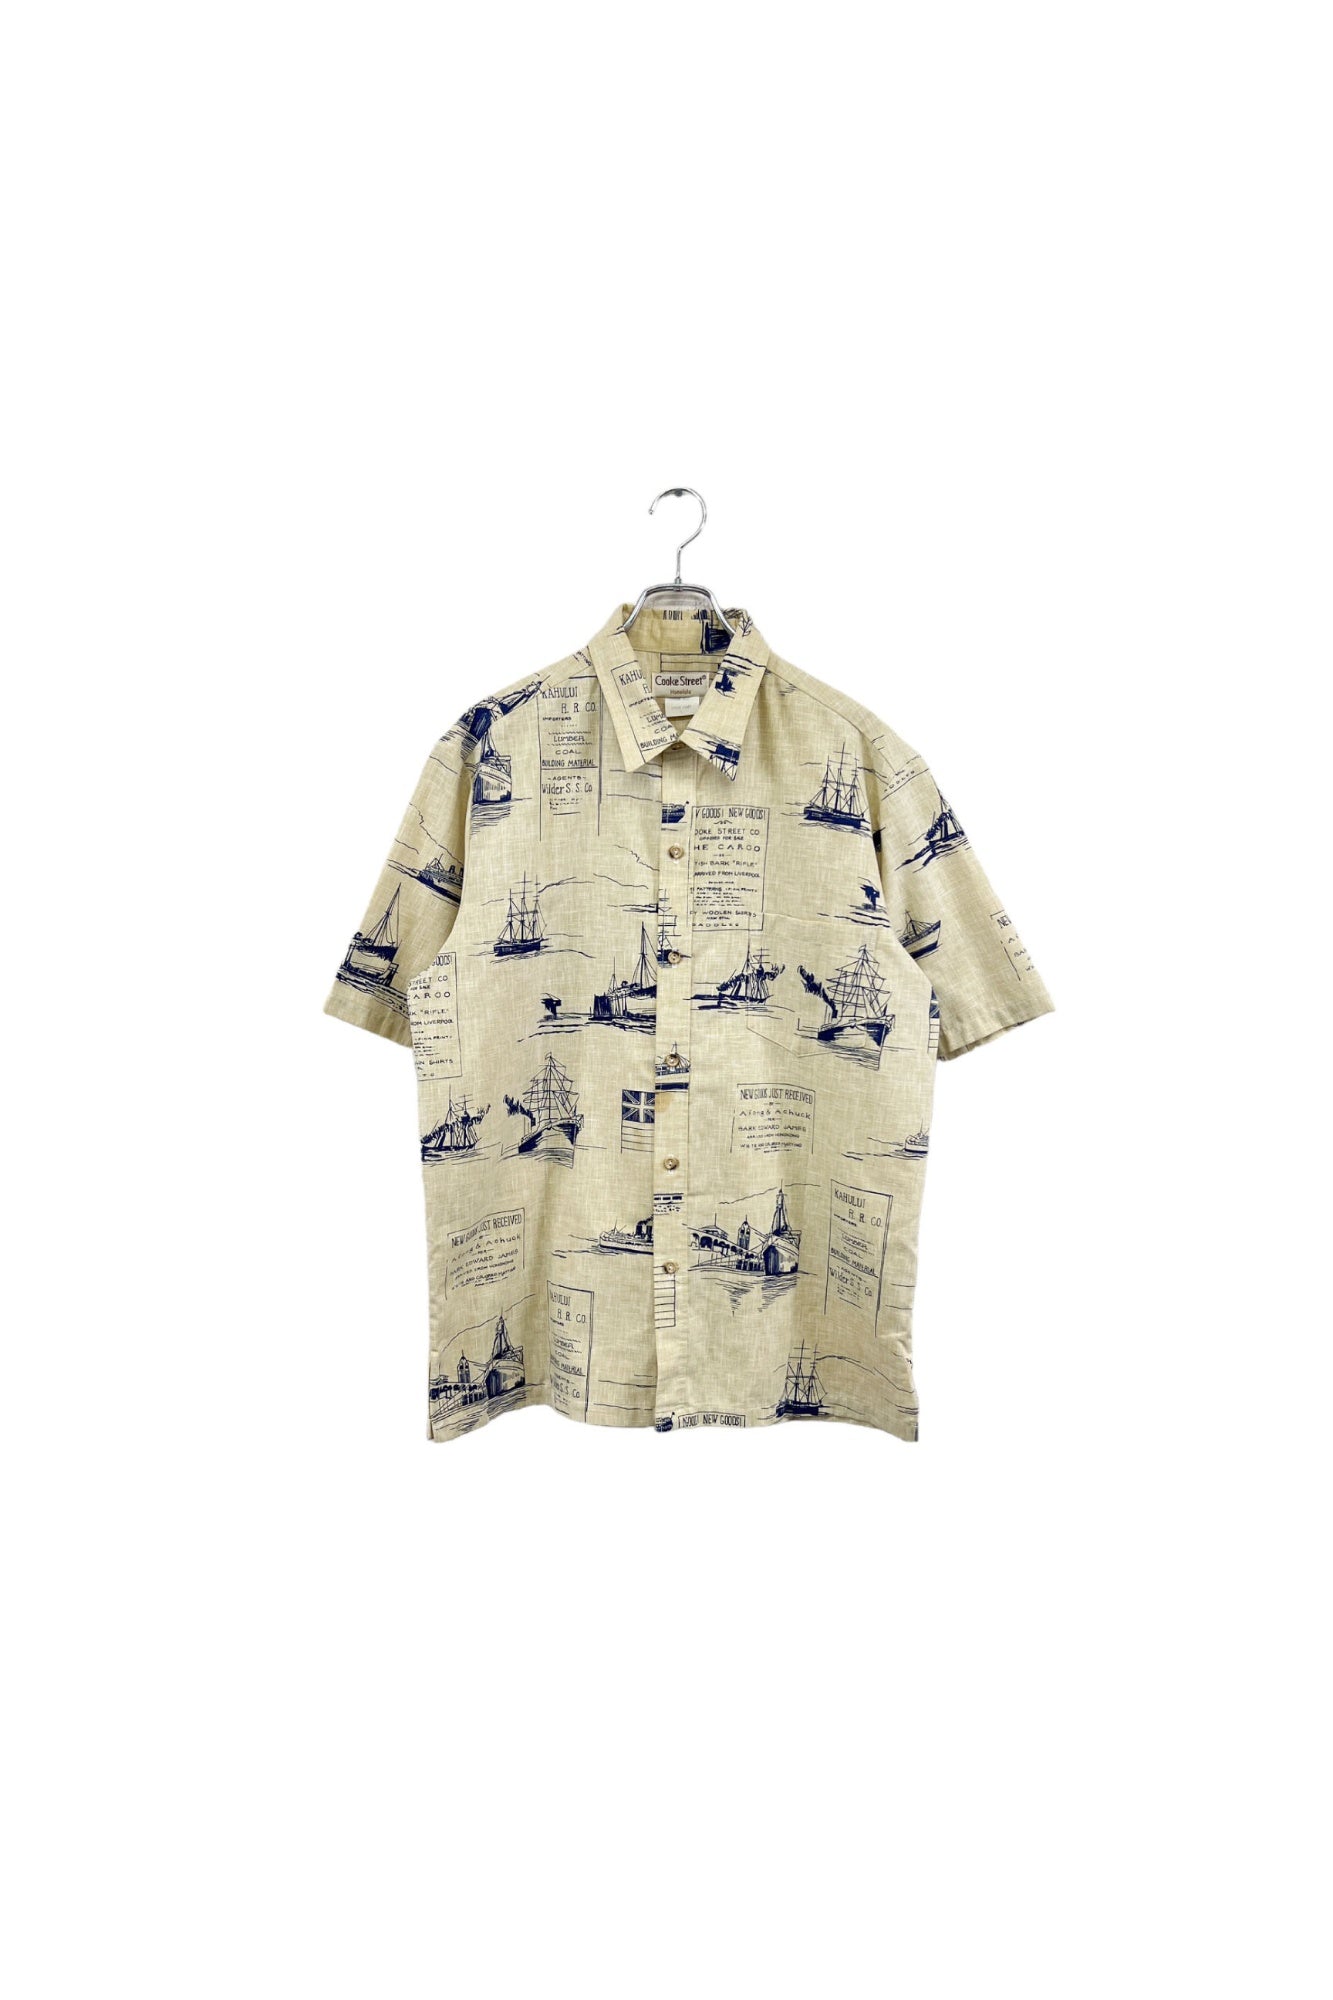 Made in USA Cooke Street Honolulu aloha shirt